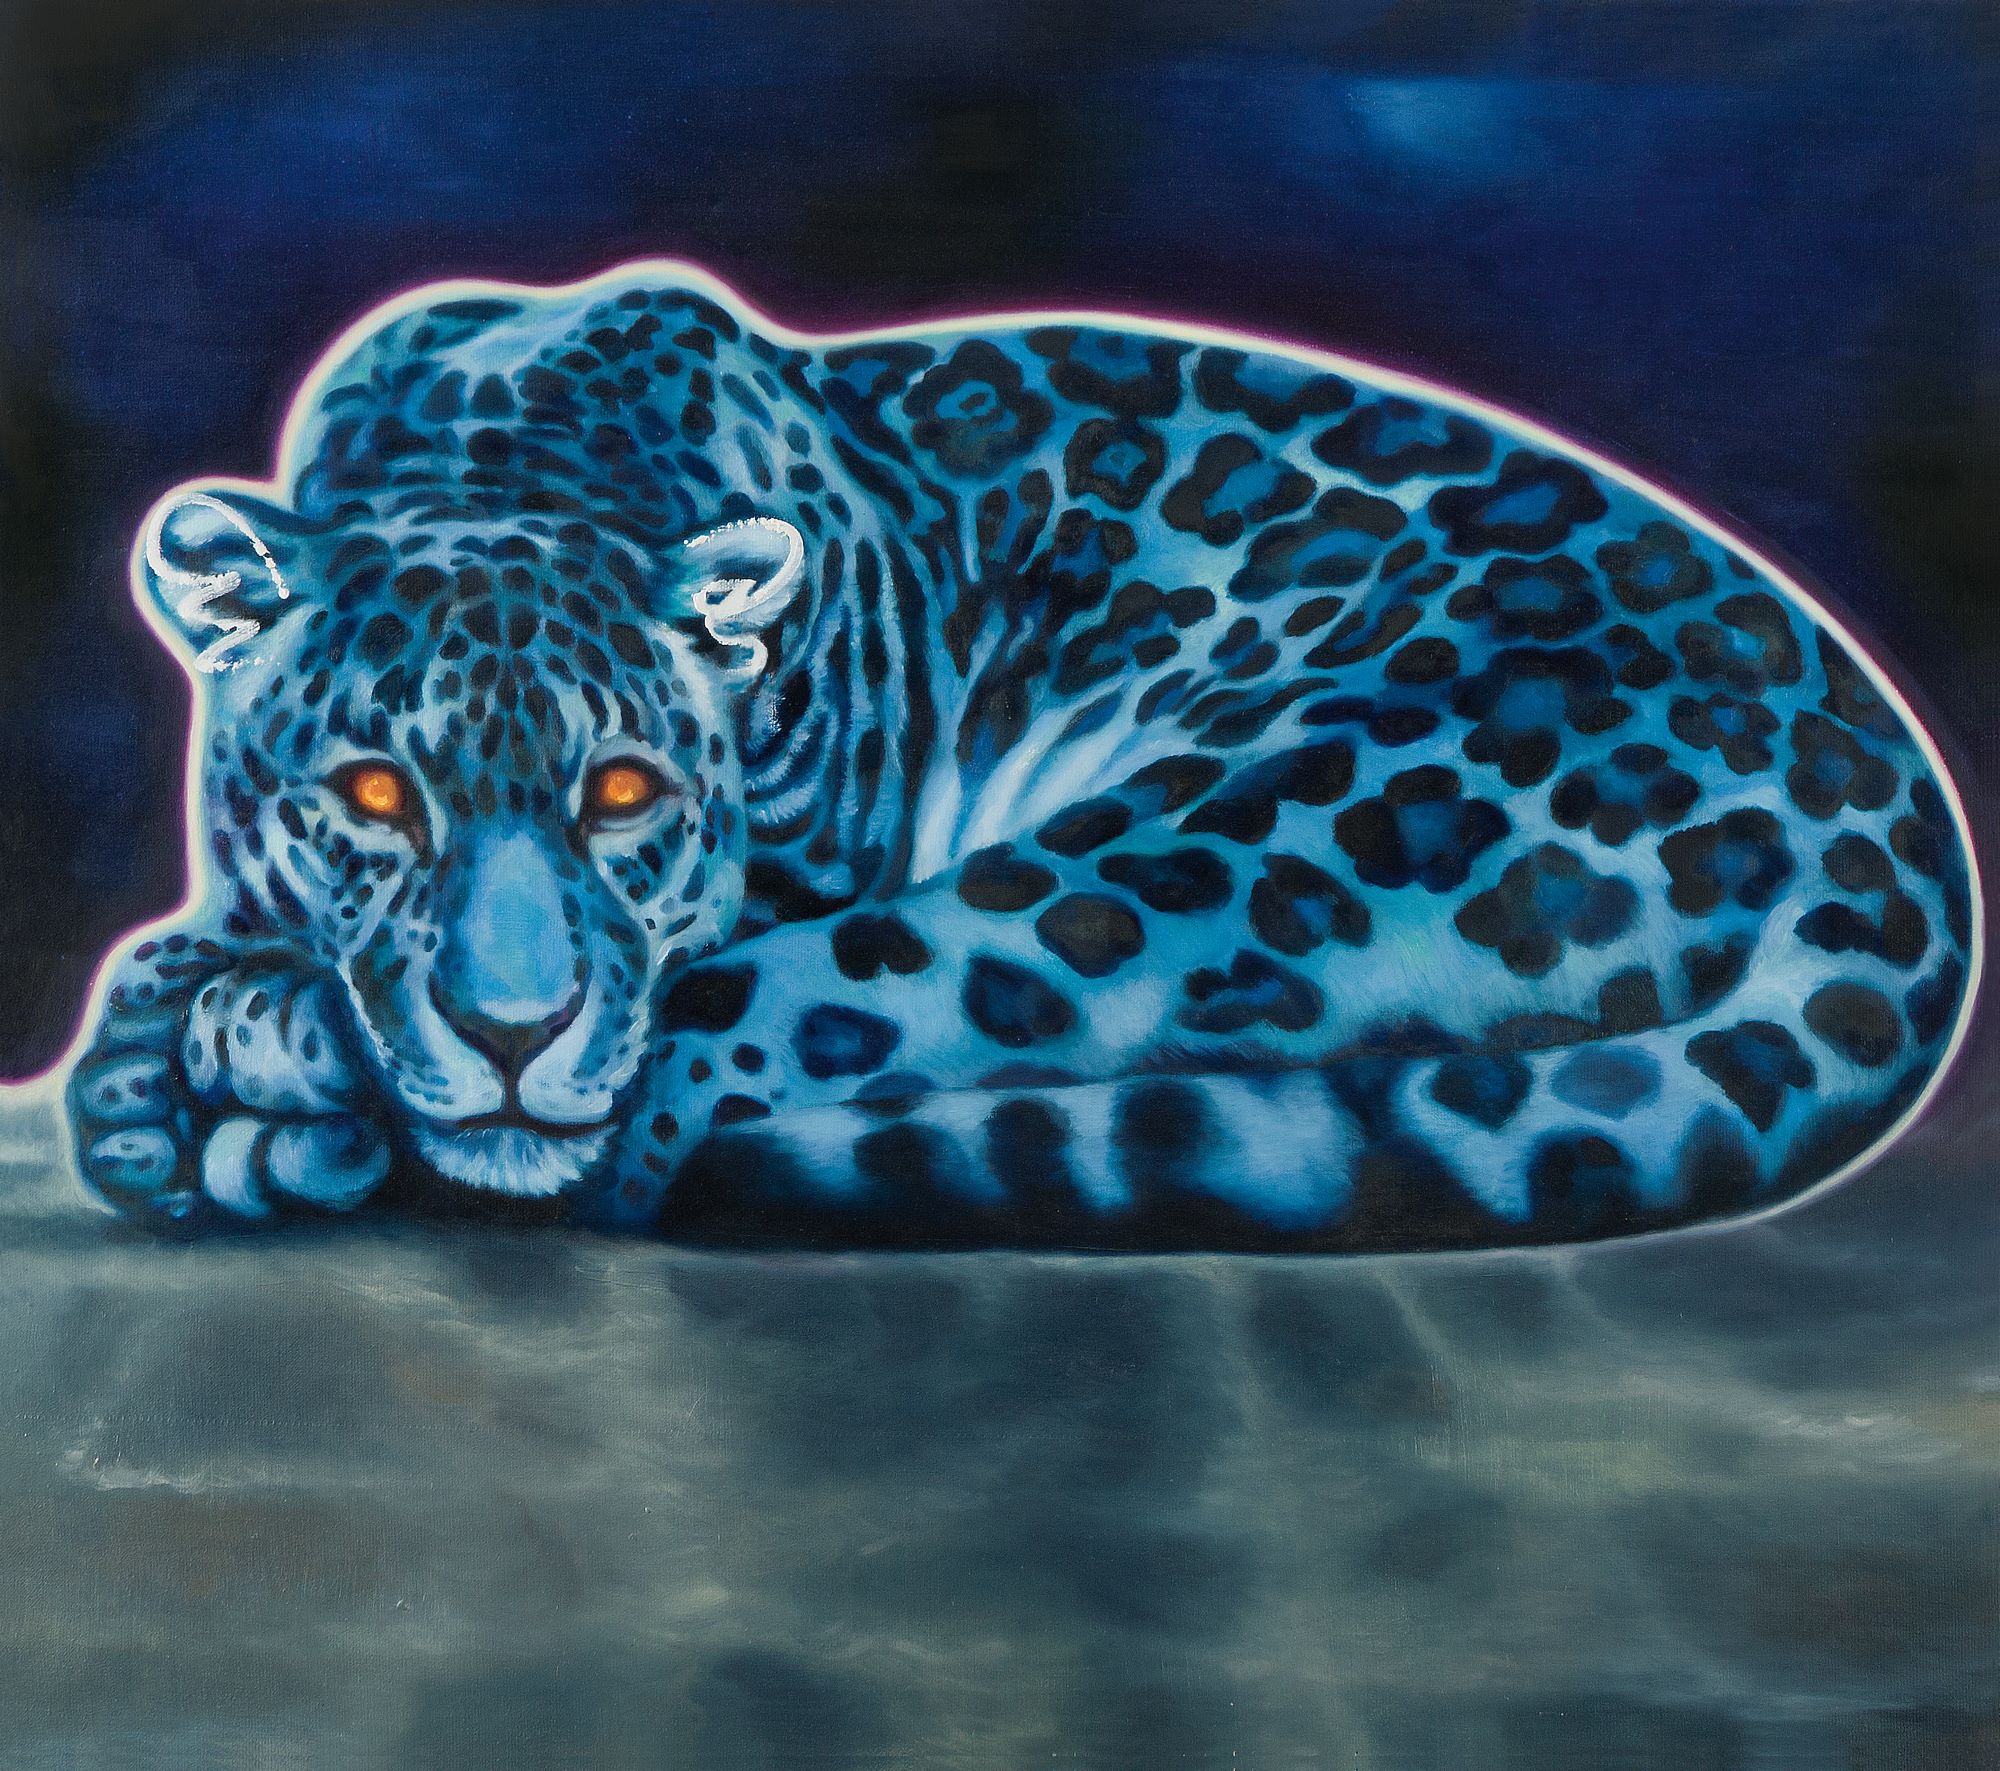 Nad rzeką Wisłą (Niebieski jaguar)